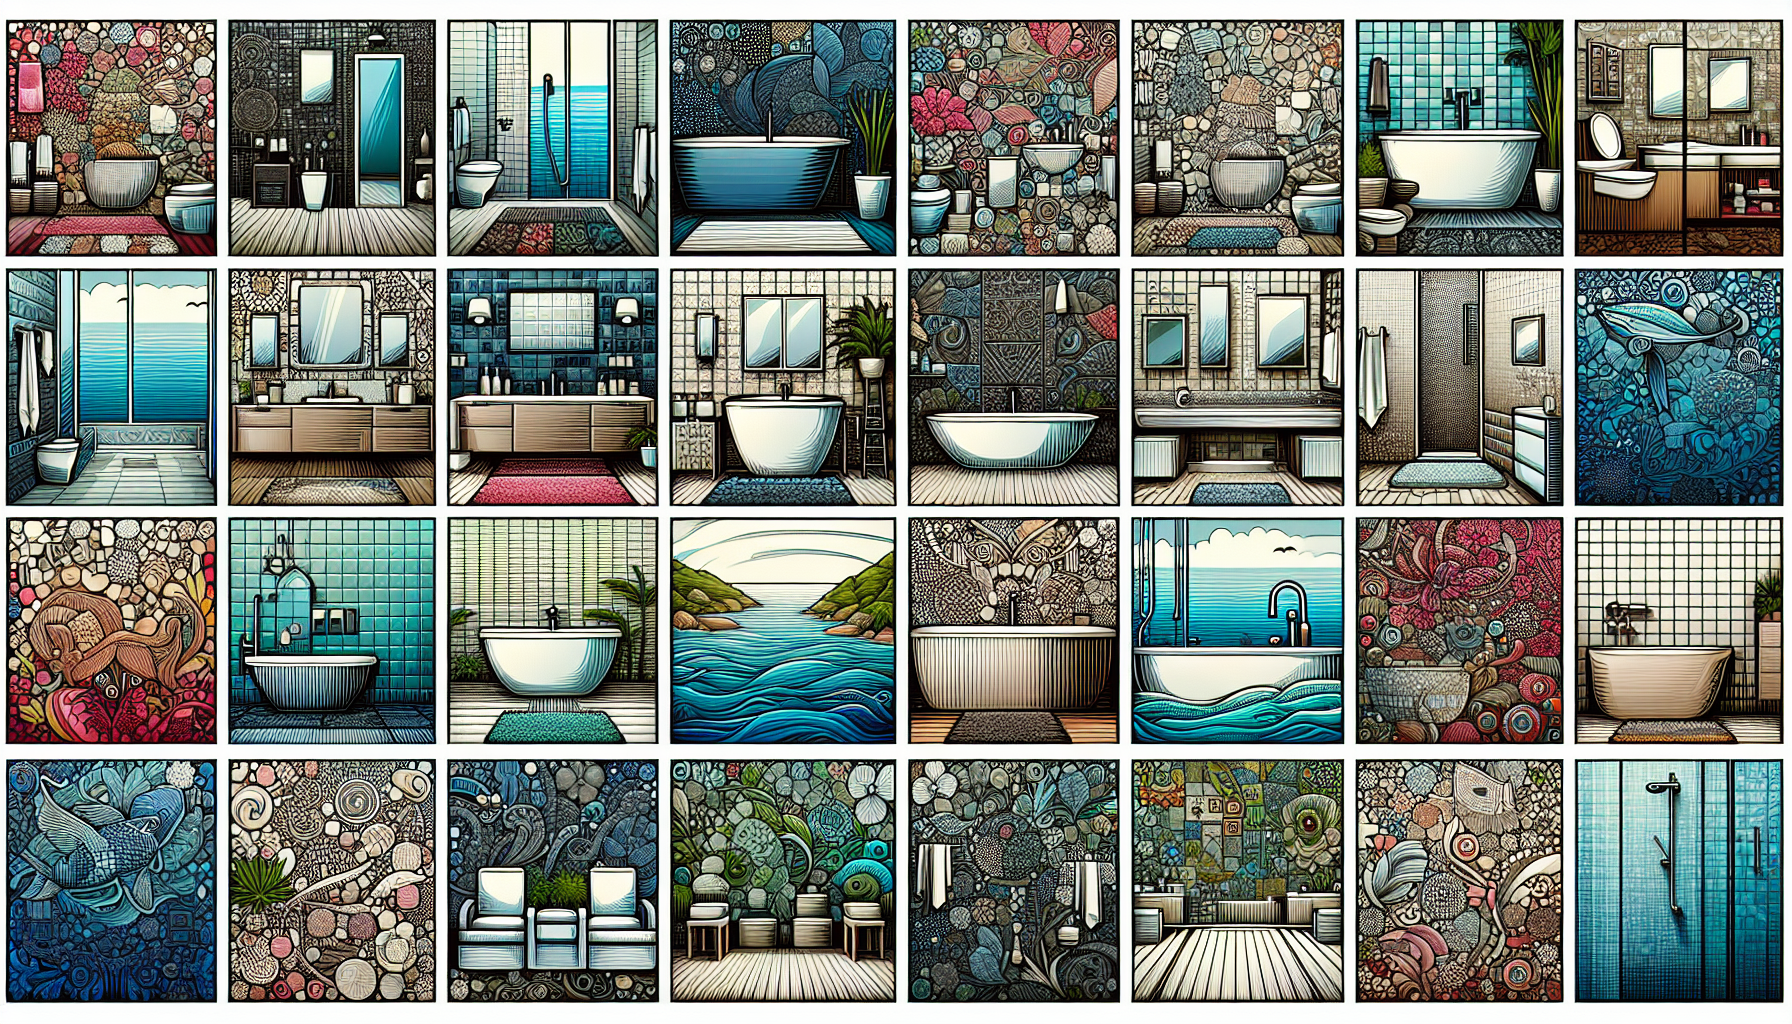 Eine Auswahl von verschiedenen Badezimmer Bildern